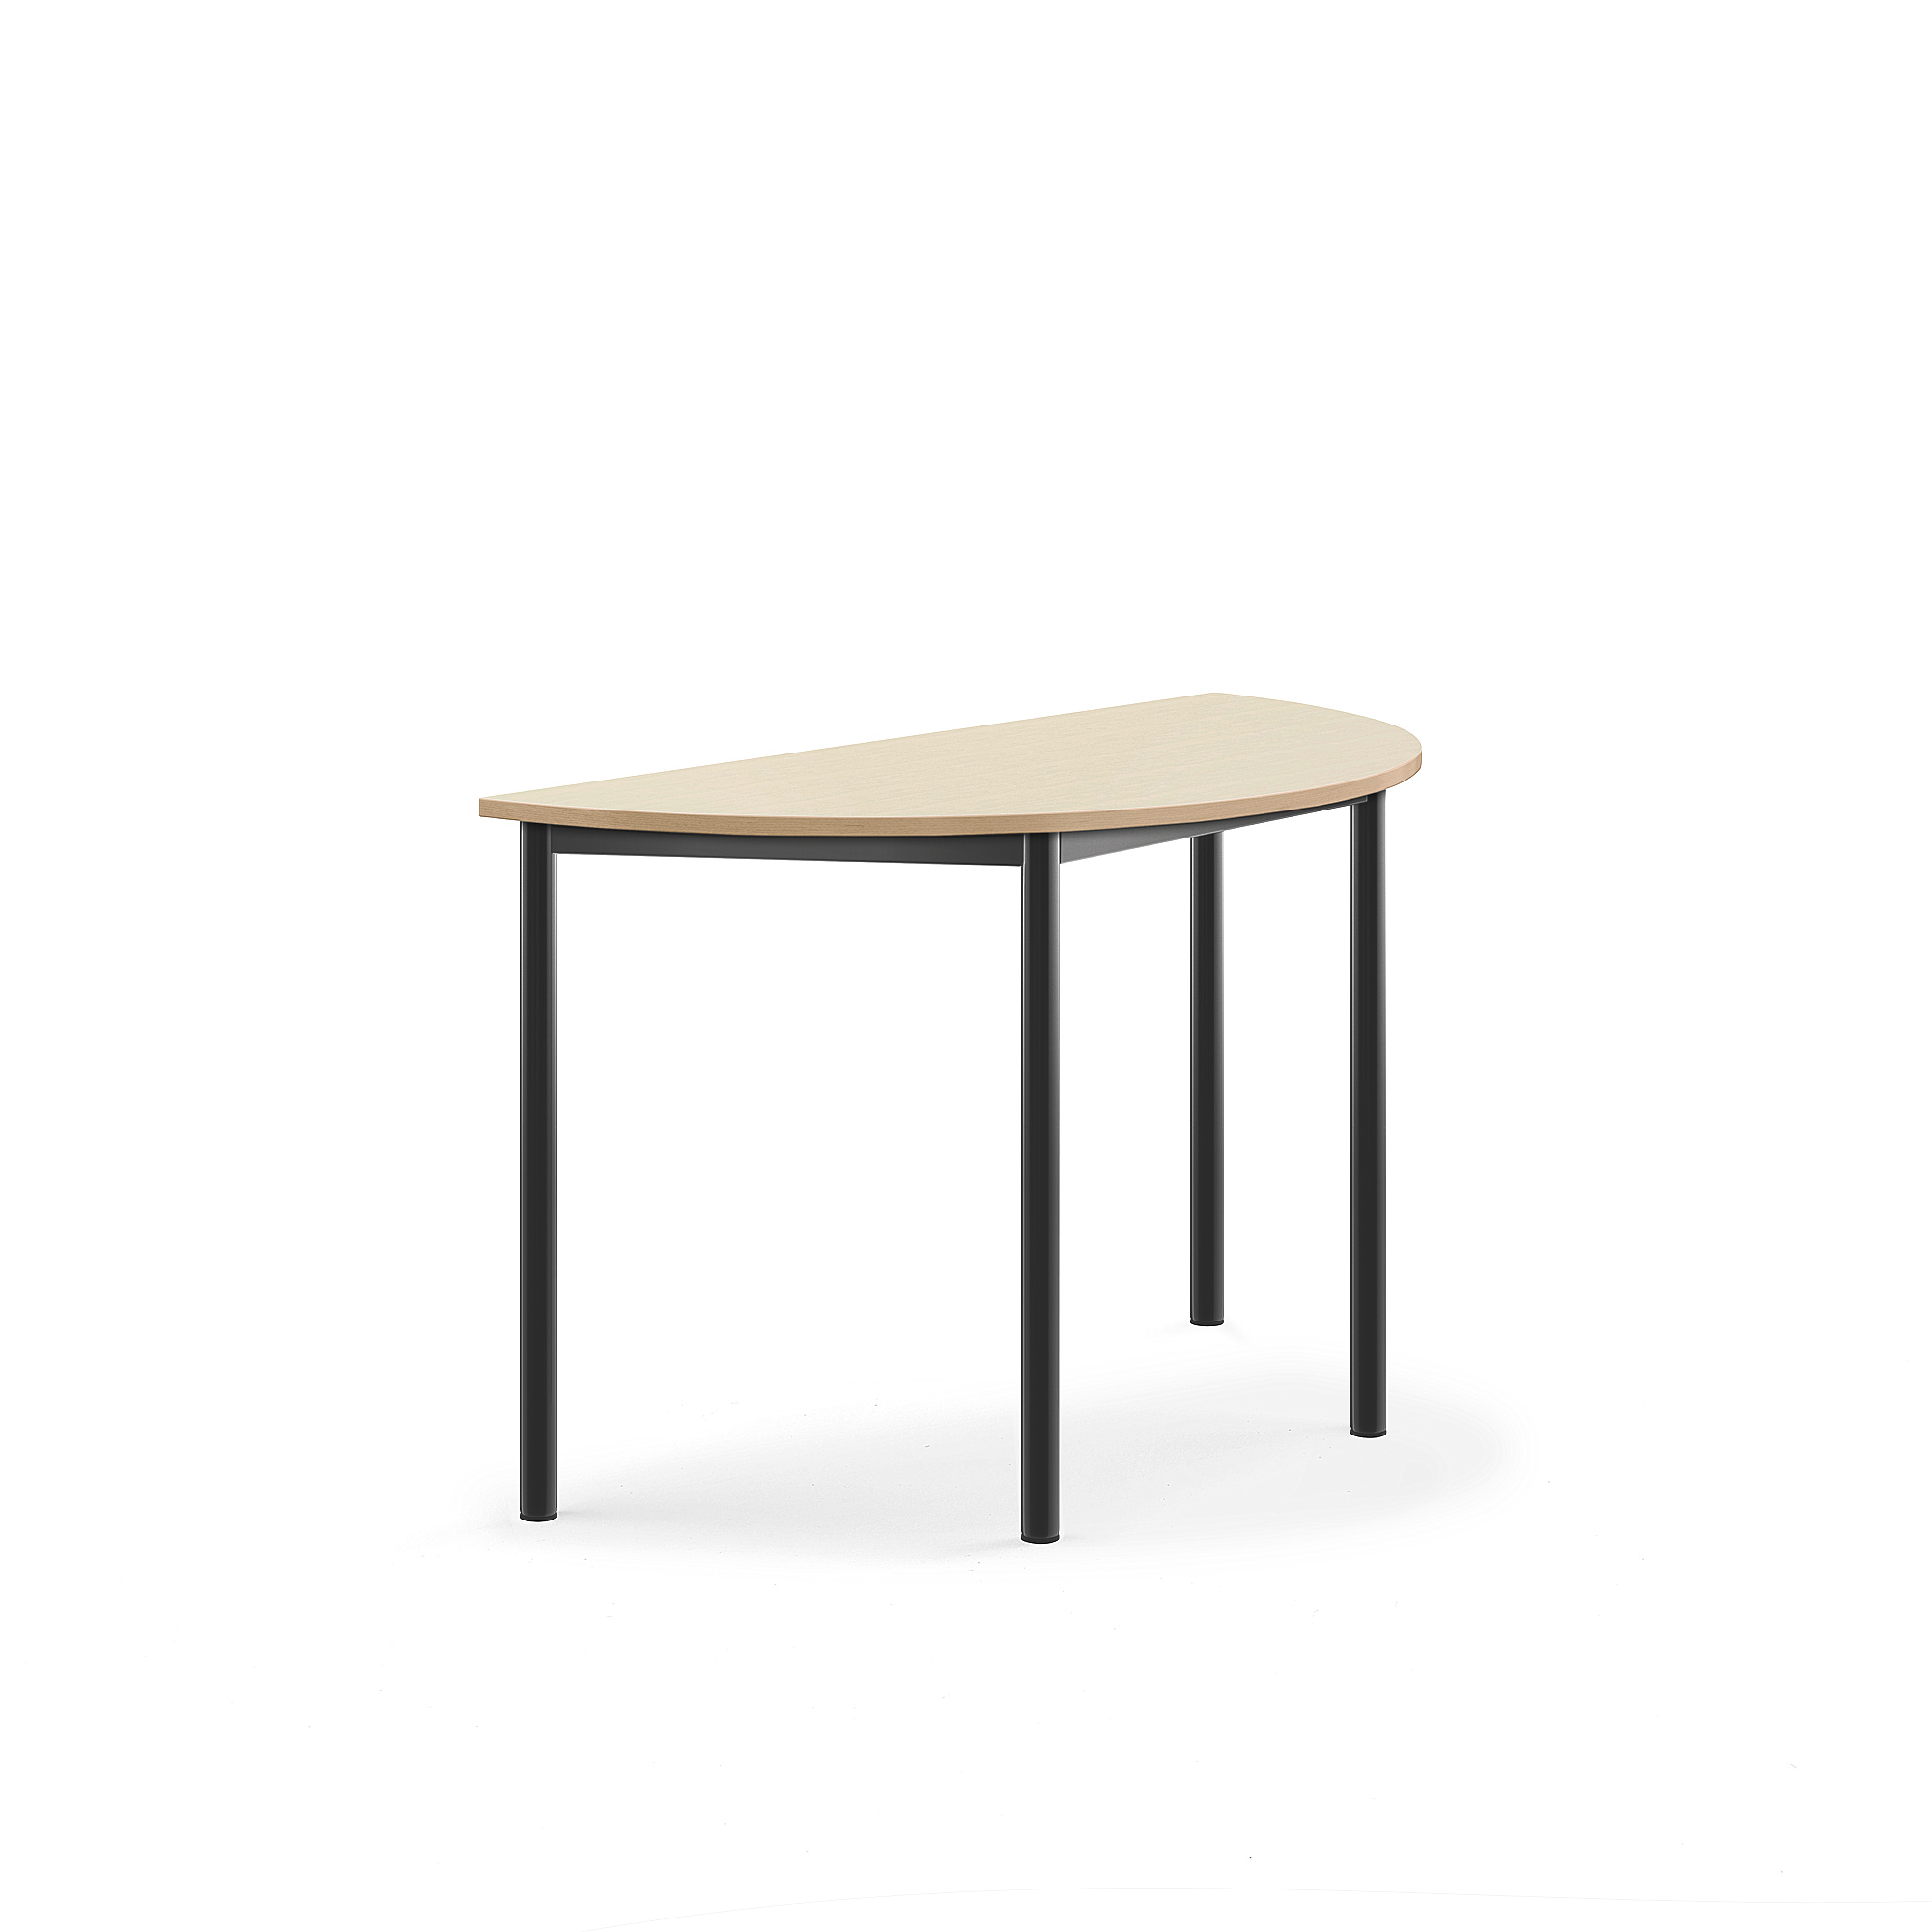 Stůl BORÅS, půlkruh, 1200x600x720 mm, antracitově šedé nohy, HPL deska, bříza